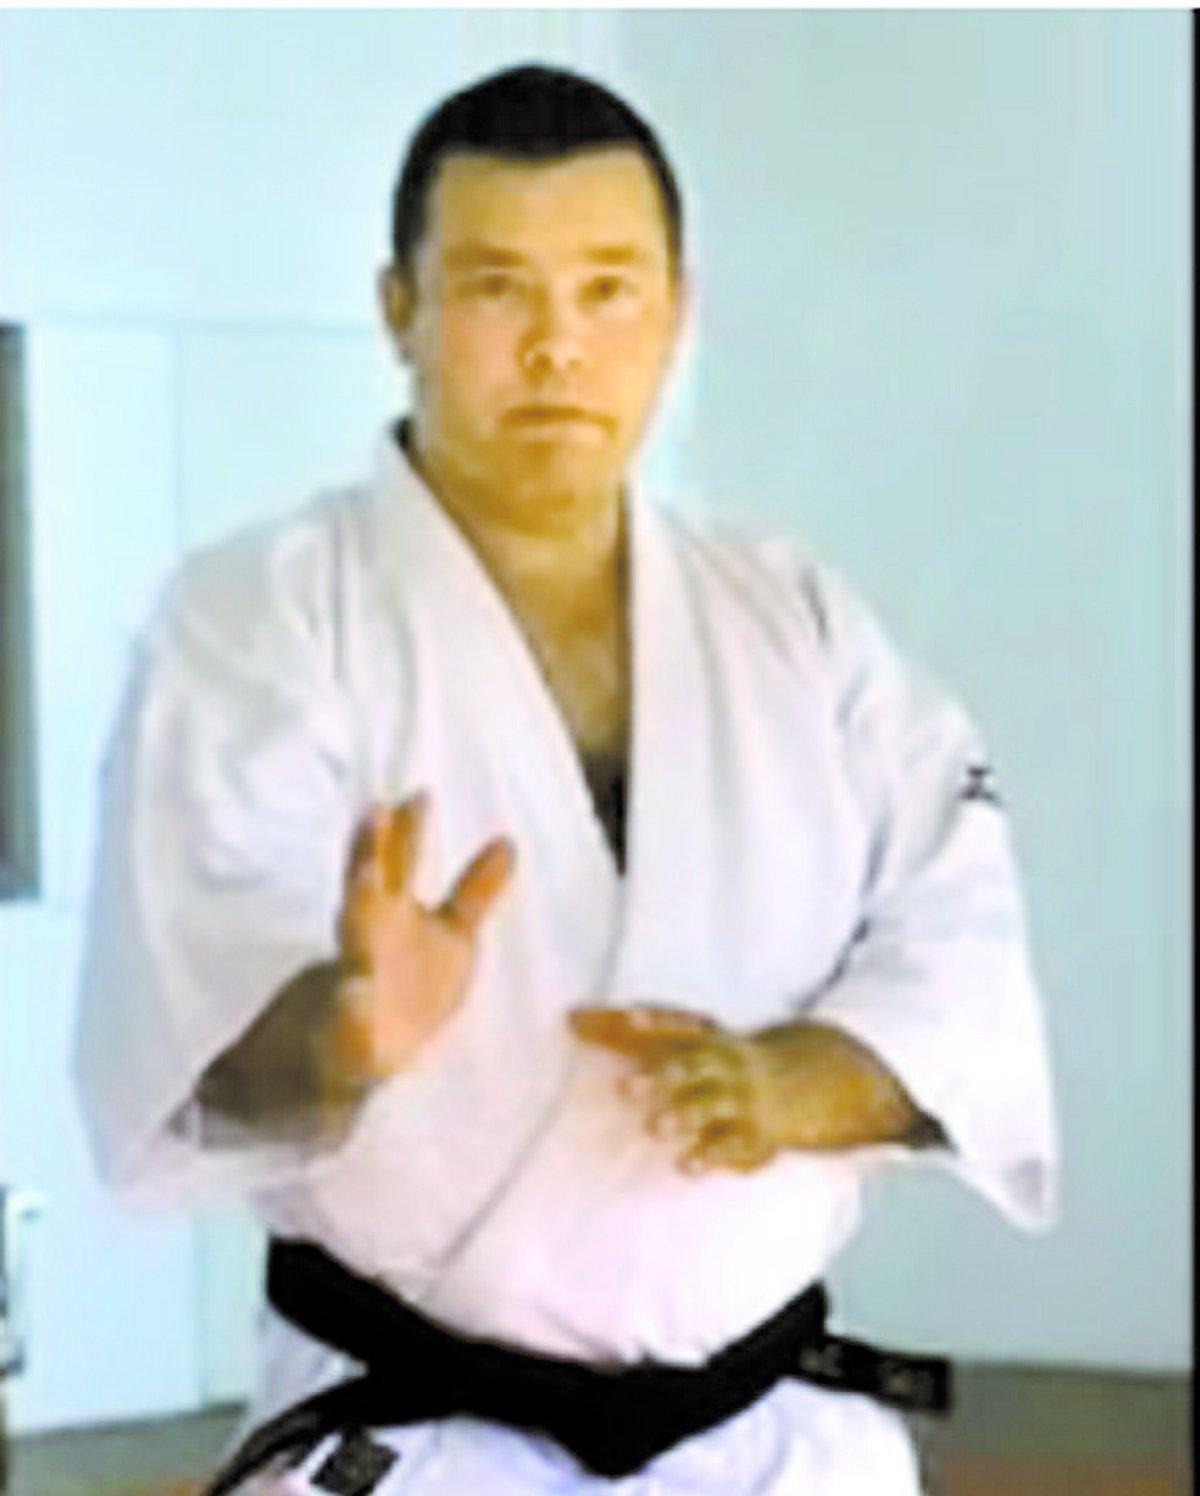 kampsportare Juhba Turunen, 44, har tränat kampsporten aikido i många år. Han beskrivs som en mycket hängiven och ambitiös kampsportare.